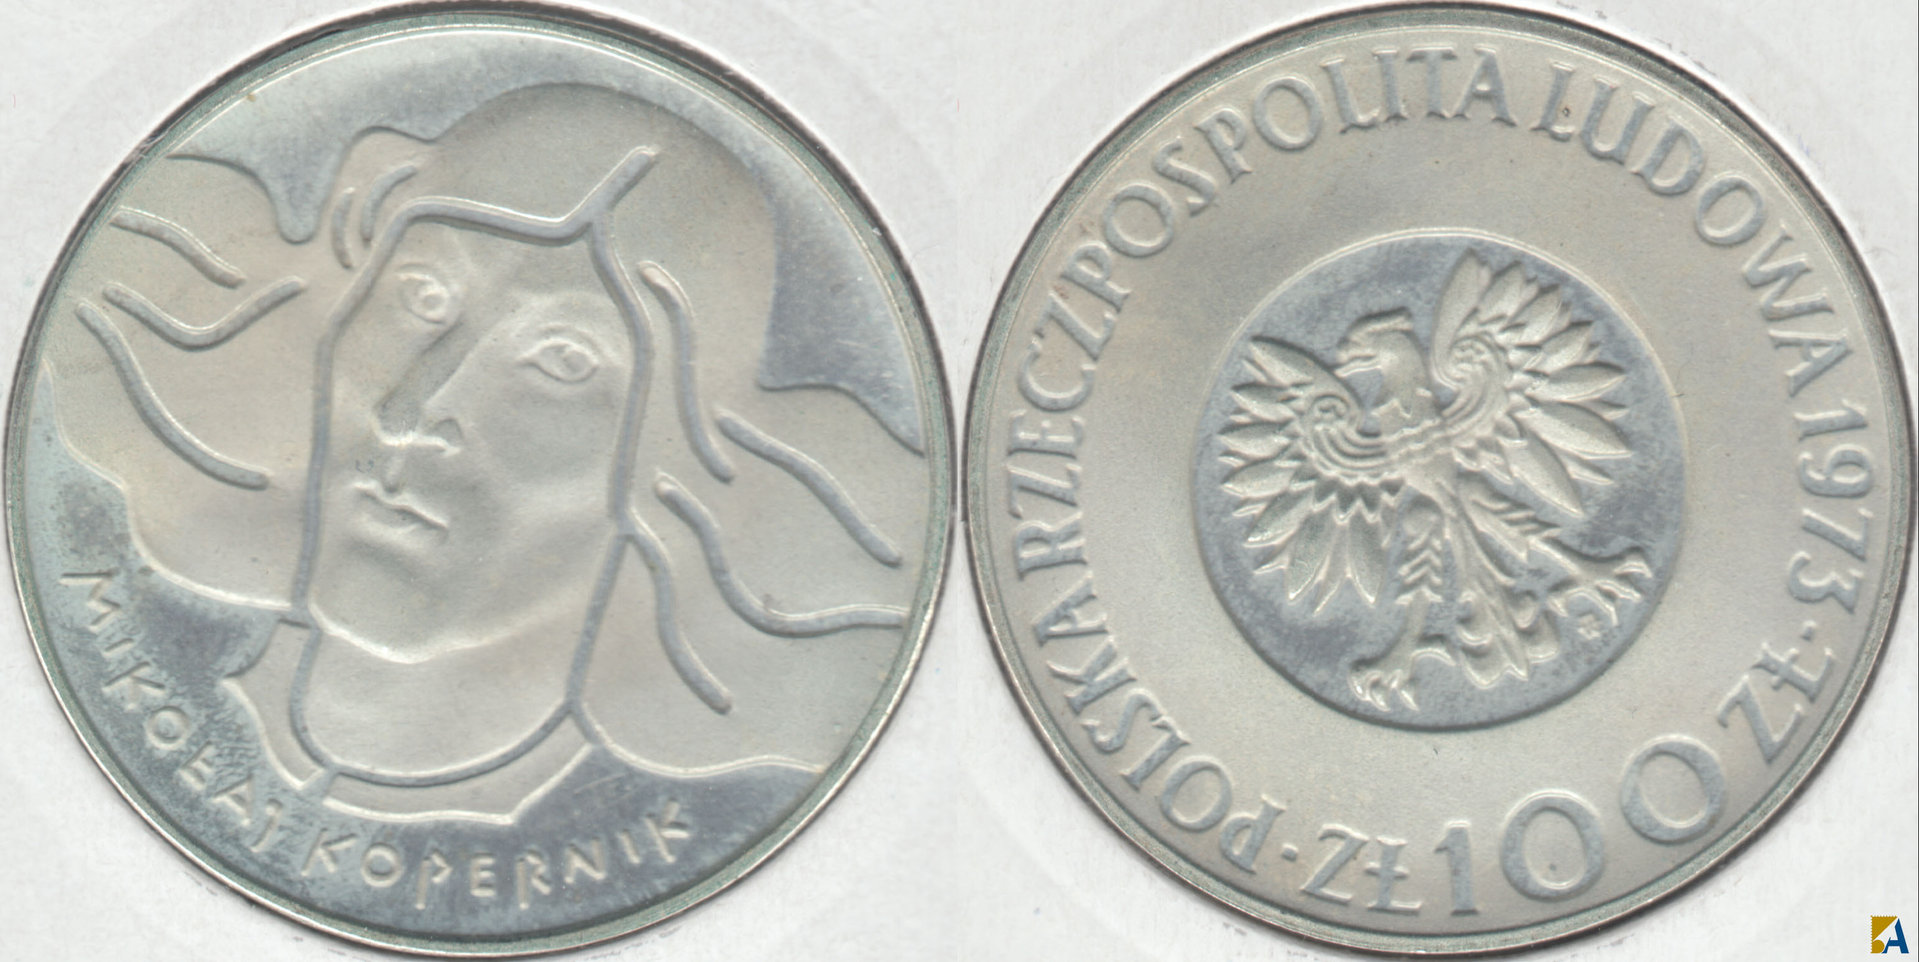 POLONIA - POLSKA. 100 ZLOTYCH DE 1973. PLATA 0.625. (2)